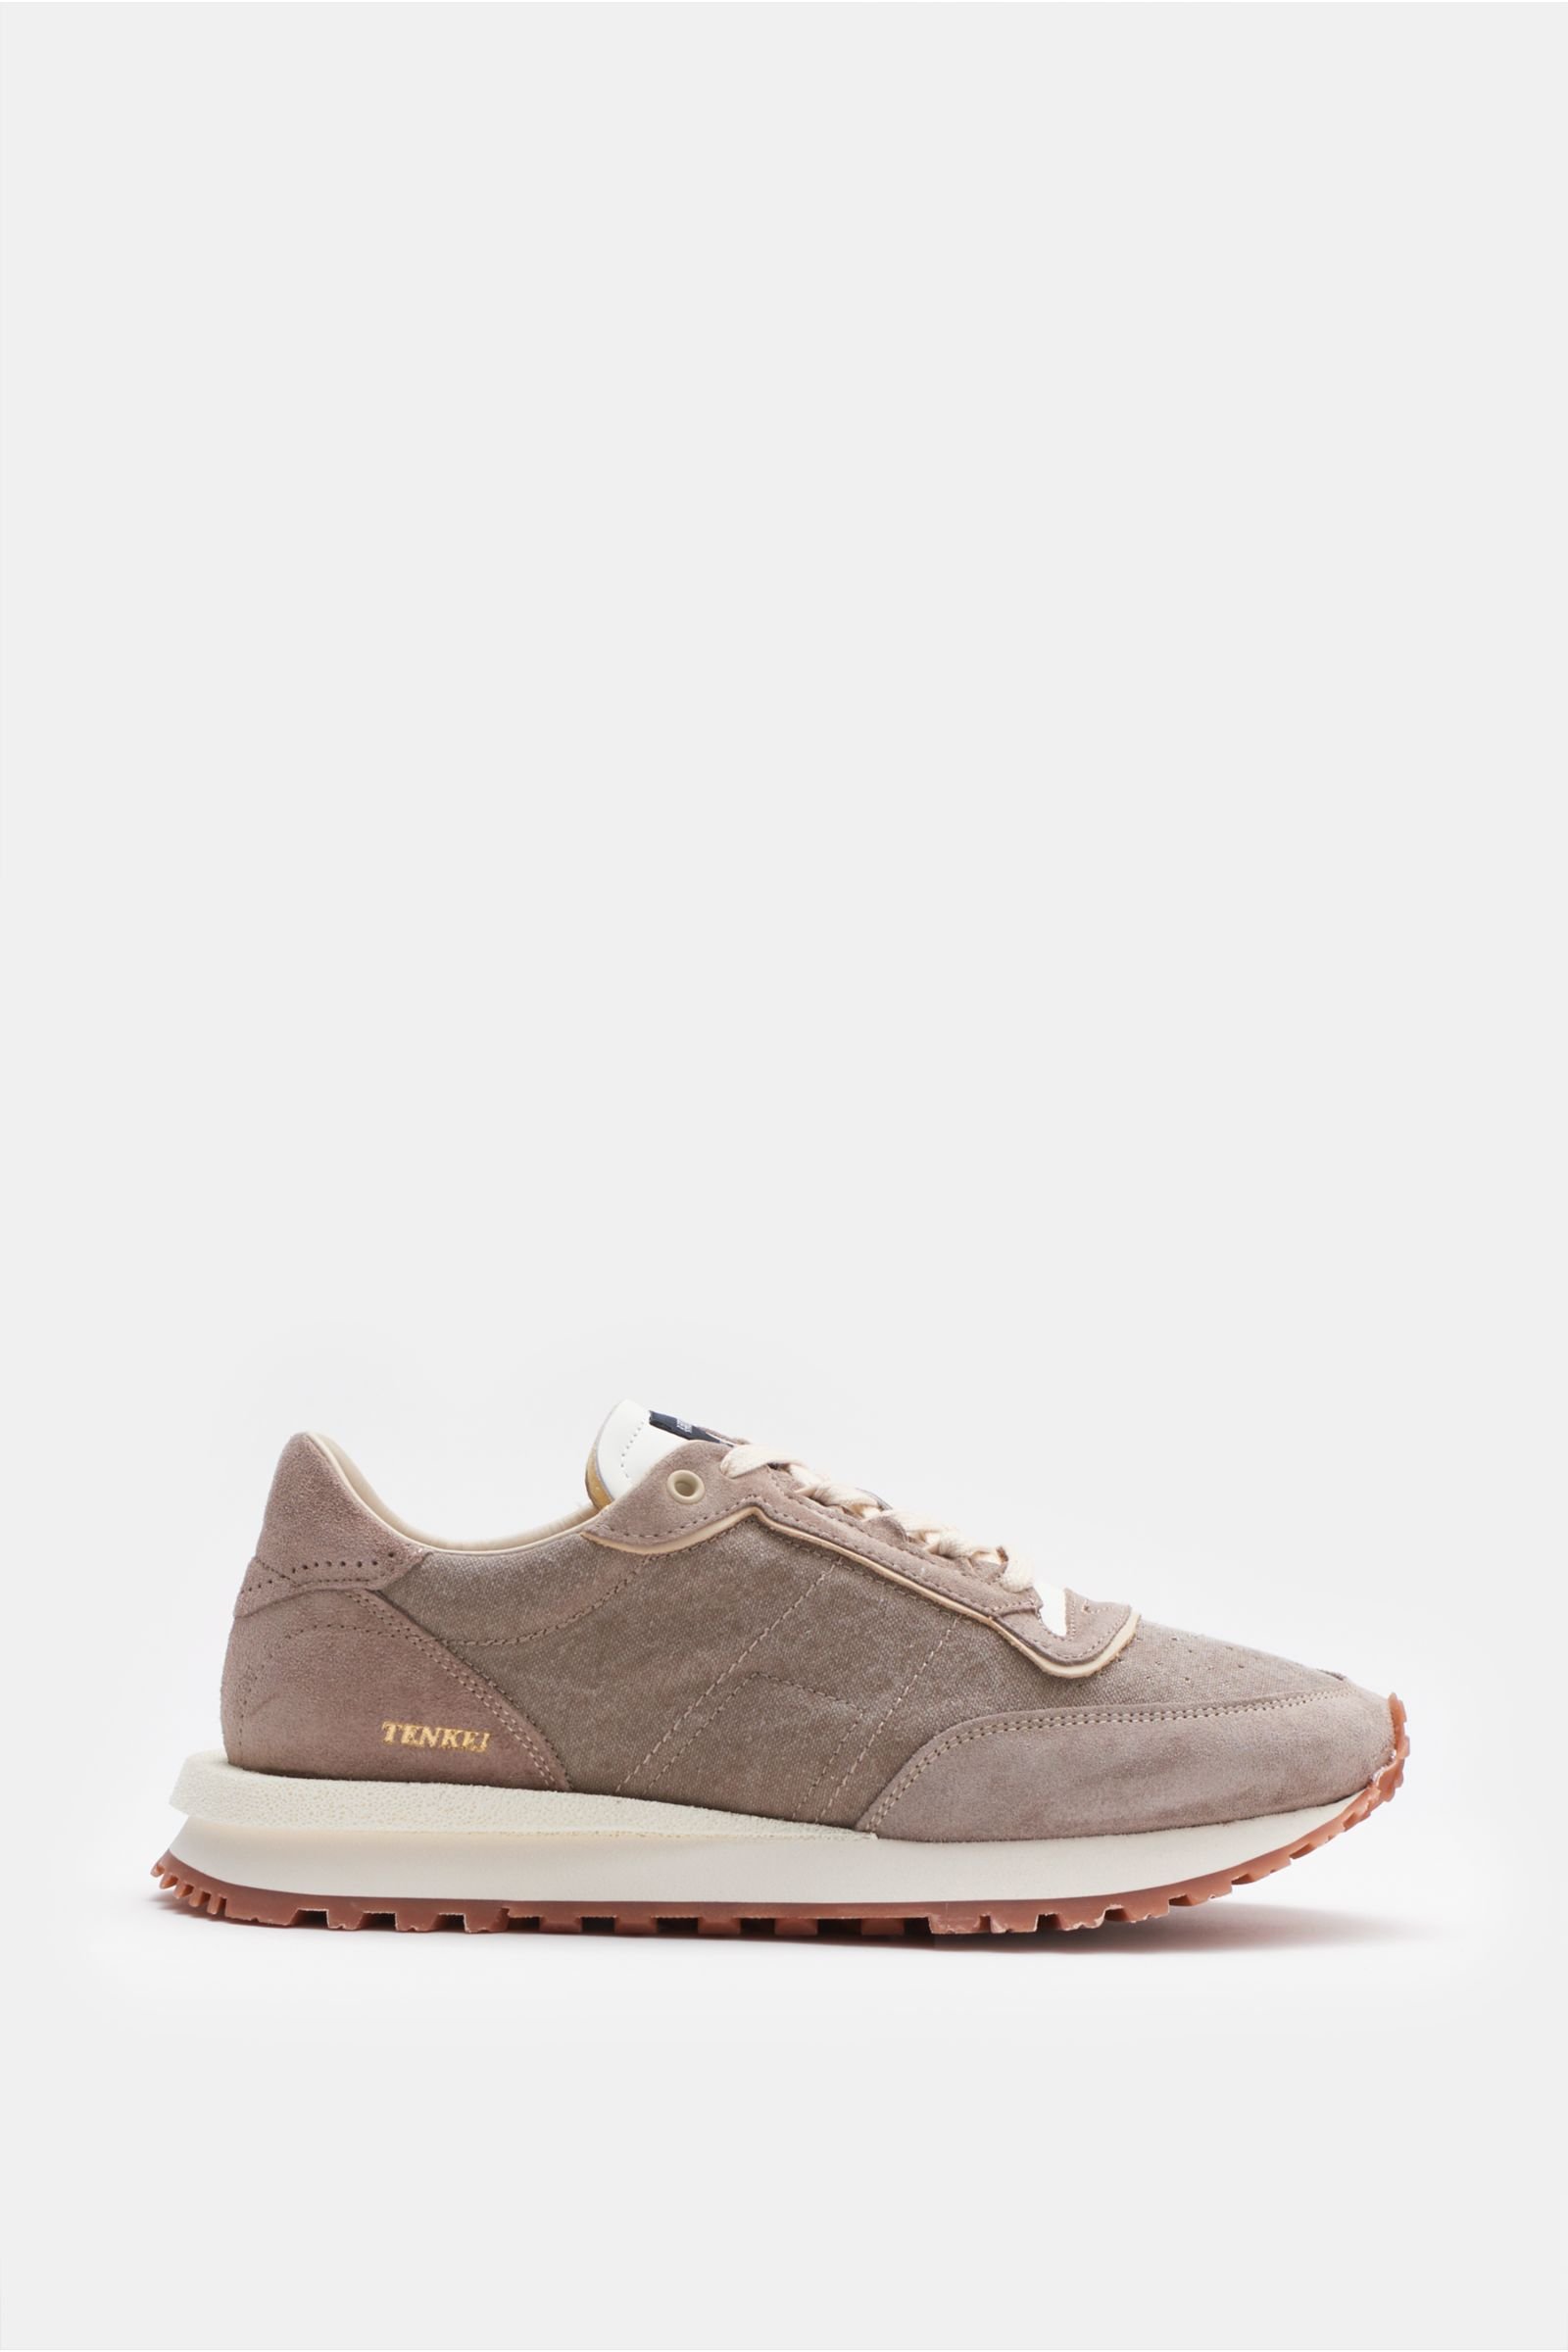 Sneakers 'Tenkei' grey-brown/beige